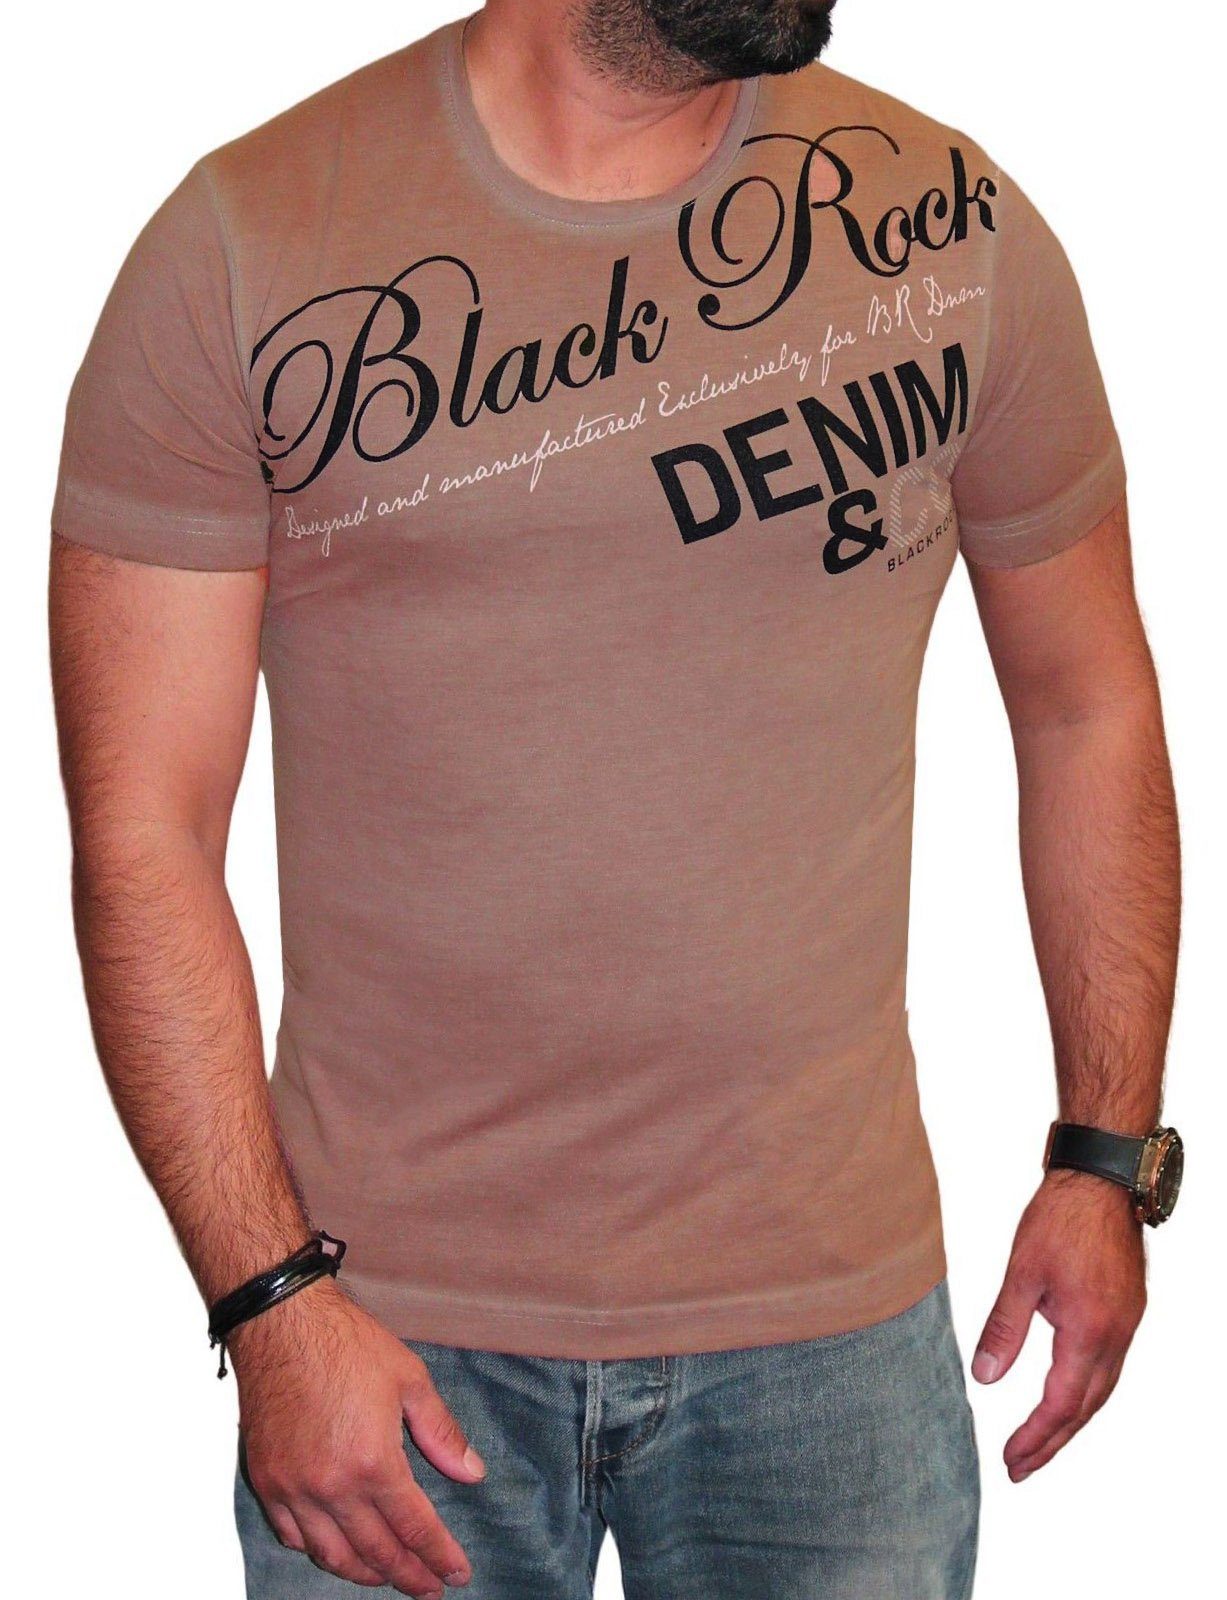 BLACKROCK T-Shirt Herren T-Shirt Casual Vintage Freizeitshirt Sommer Festival Braun